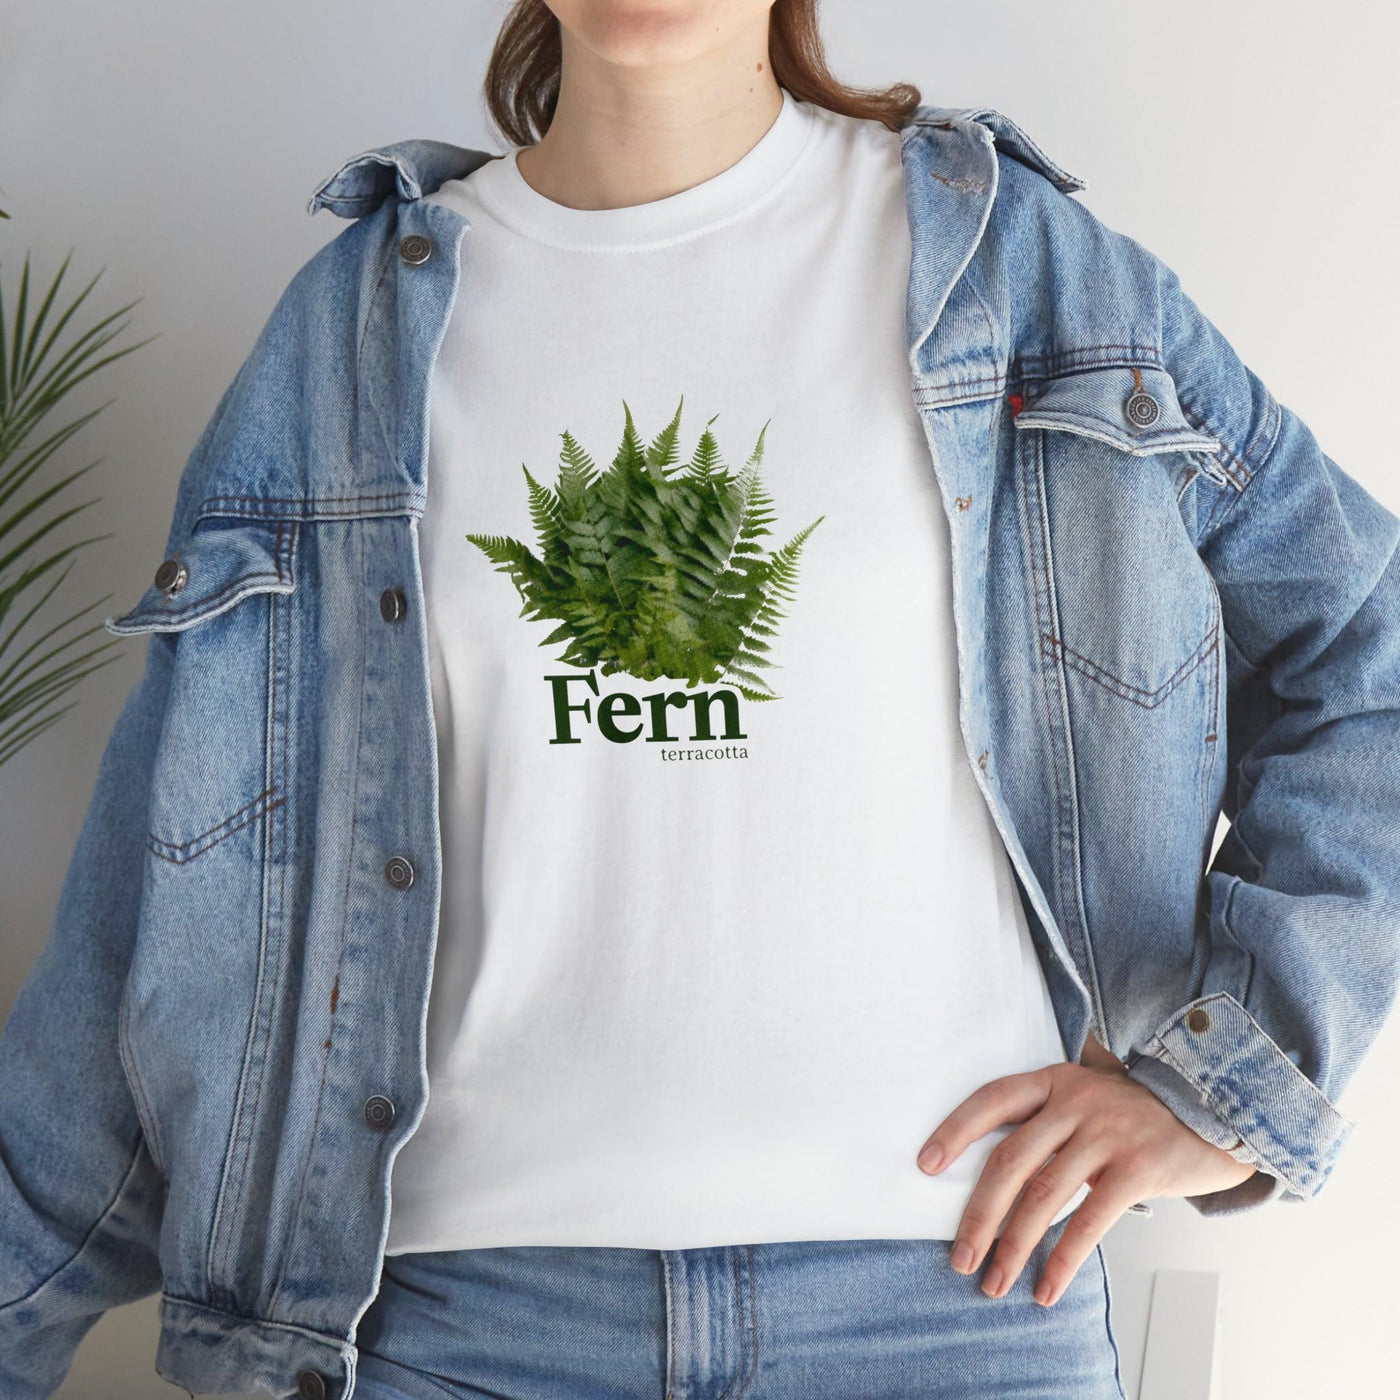 Fern T-Shirt